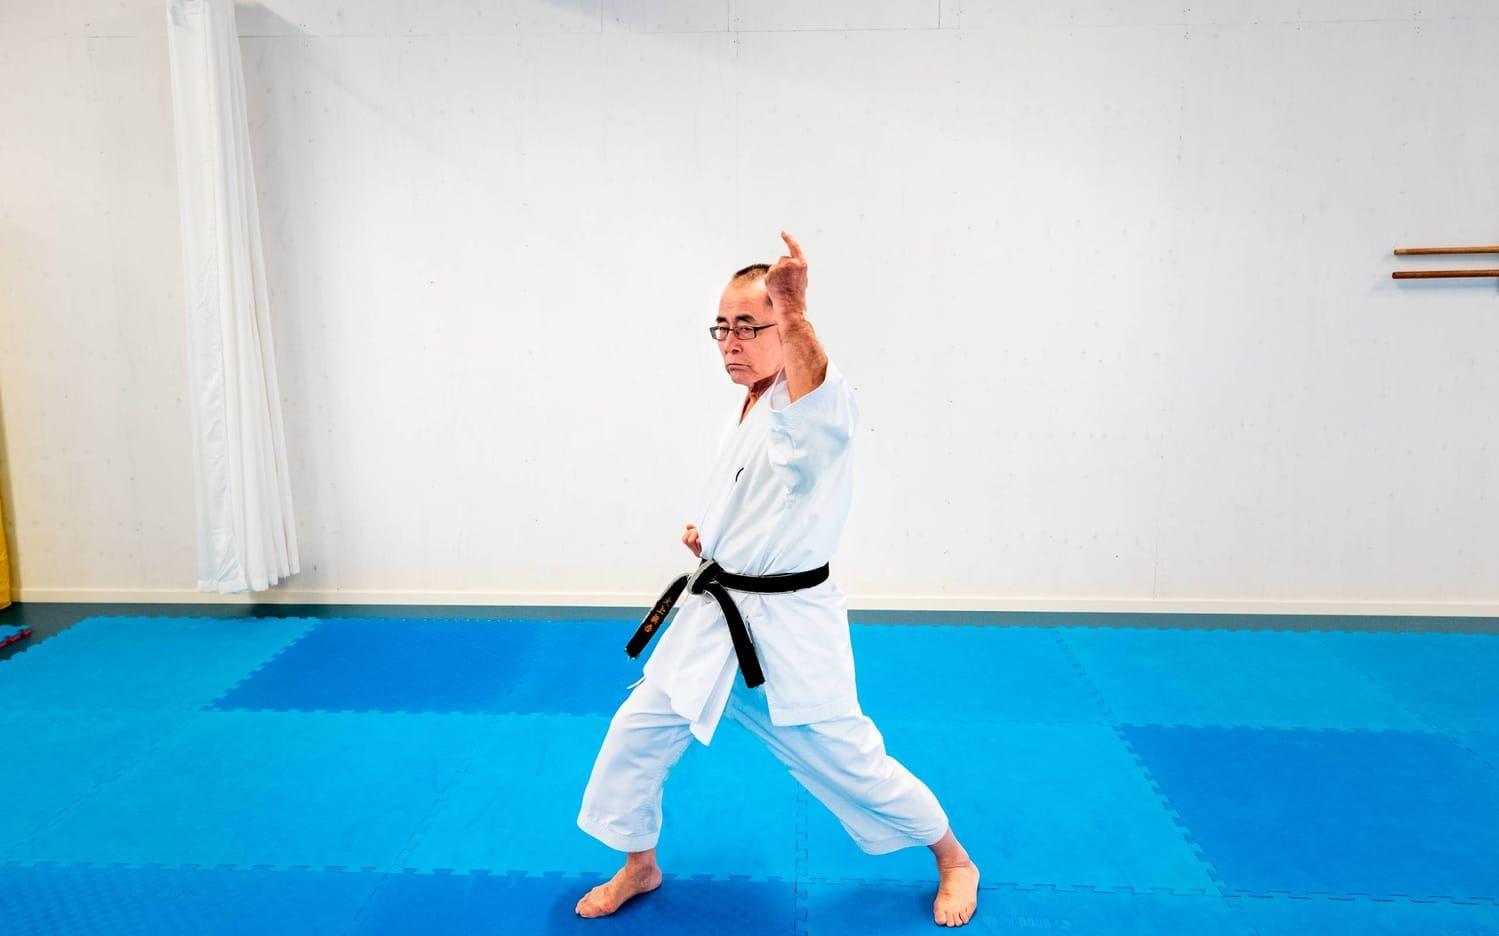 Shingo Ohgami kom till Chalmers som gästforskare i slutet på 60-talet. Sedan dess har han blivit kvar i Sverige, även om han regelbundet reser "hem" till Japan varje år – i första hand för att förkovra sig inom karatesporten. 75 år fyllda är han fortfarande lika aktiv i sin favoritsport. Bild: Nicklas Elmrin